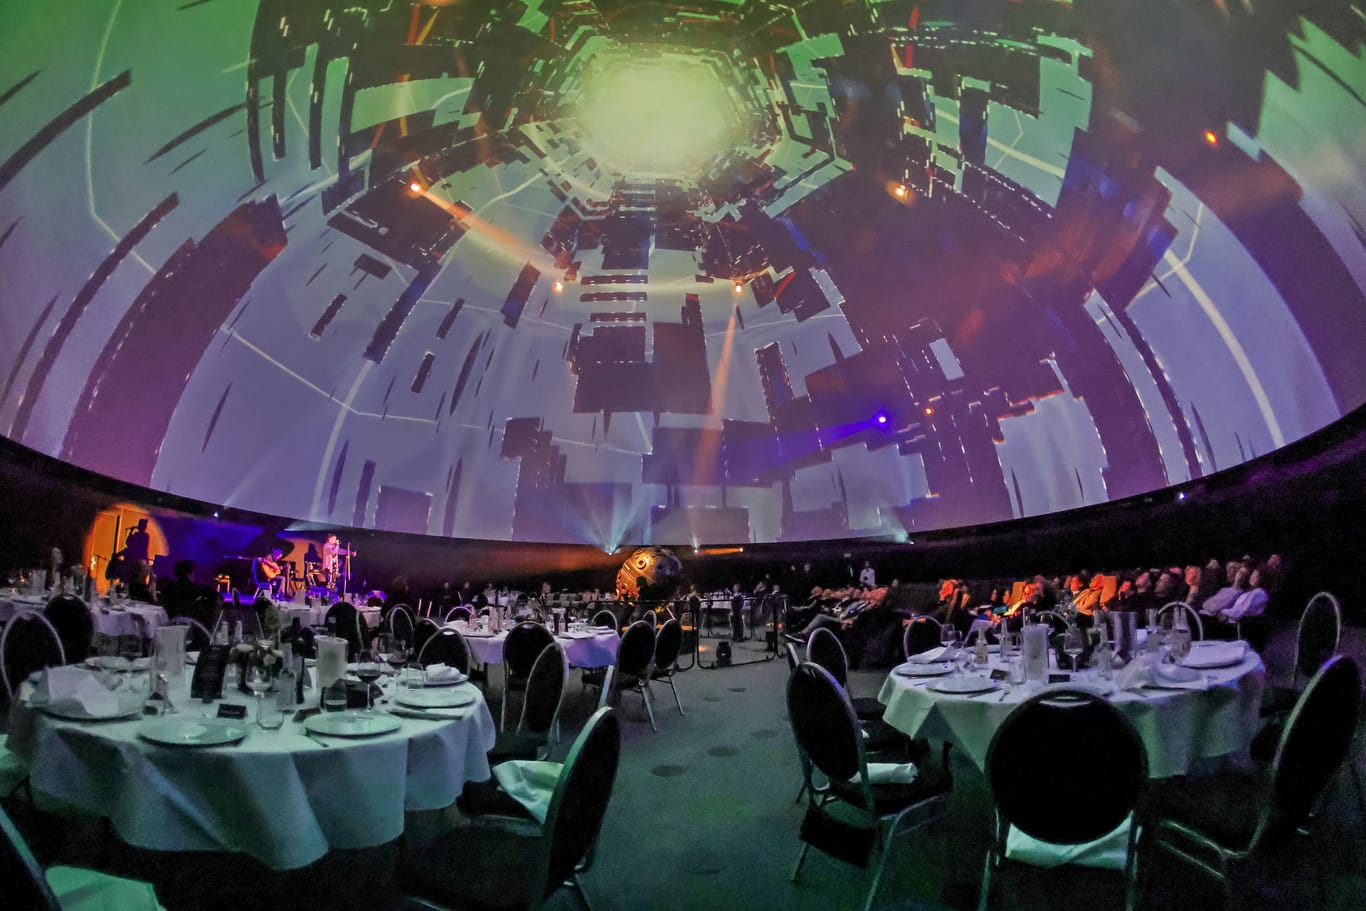 Das Zeiss-Großplanetarium in Berlin: Zum 100-jährigen Jubiläum verwandelt sich der Planetariumssaal in ein Restaurant.